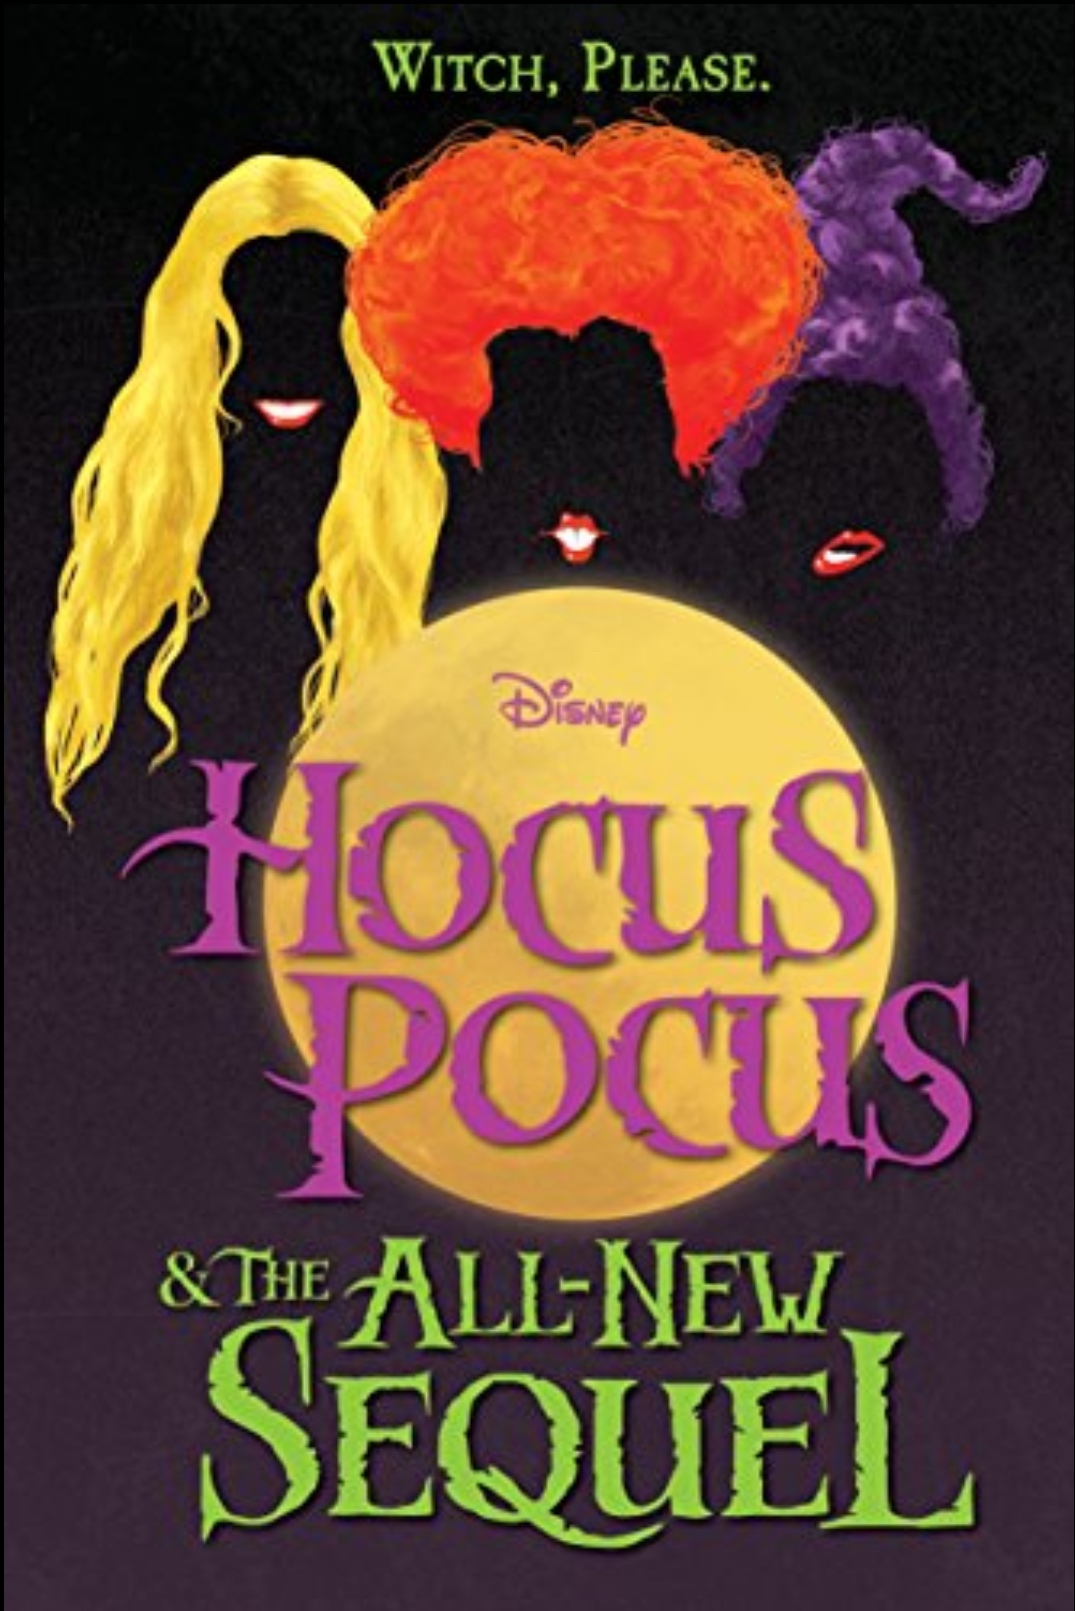 A. W. Jantha: Hocus pocus & the all-new sequel (2018, Freeform)